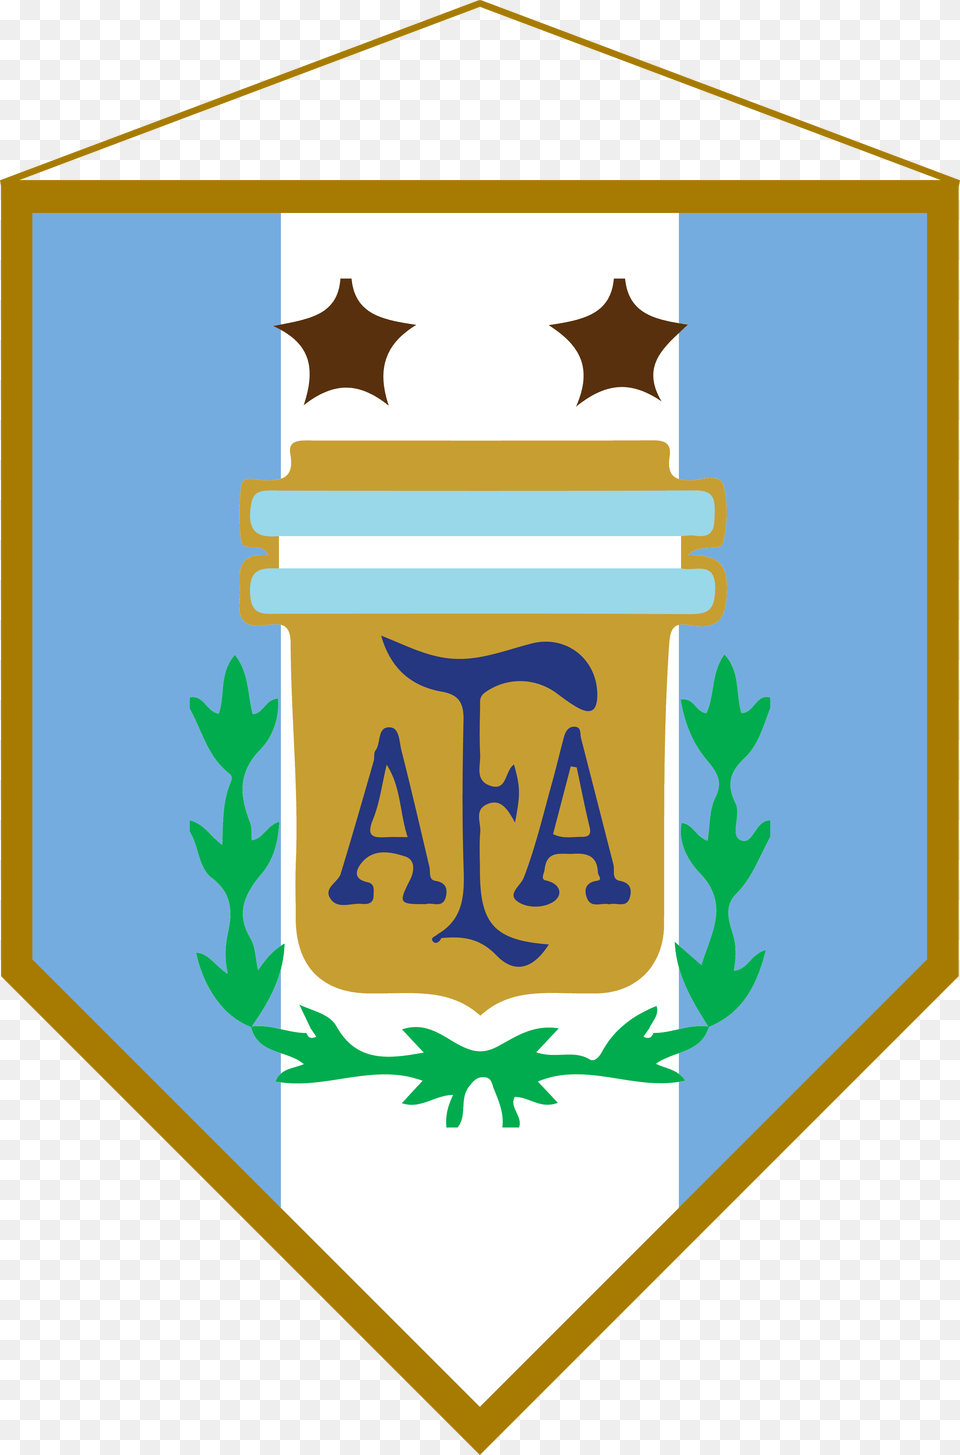 Logo Bandern Argentina Argentina National Football Team, Armor, Symbol, Emblem Png Image